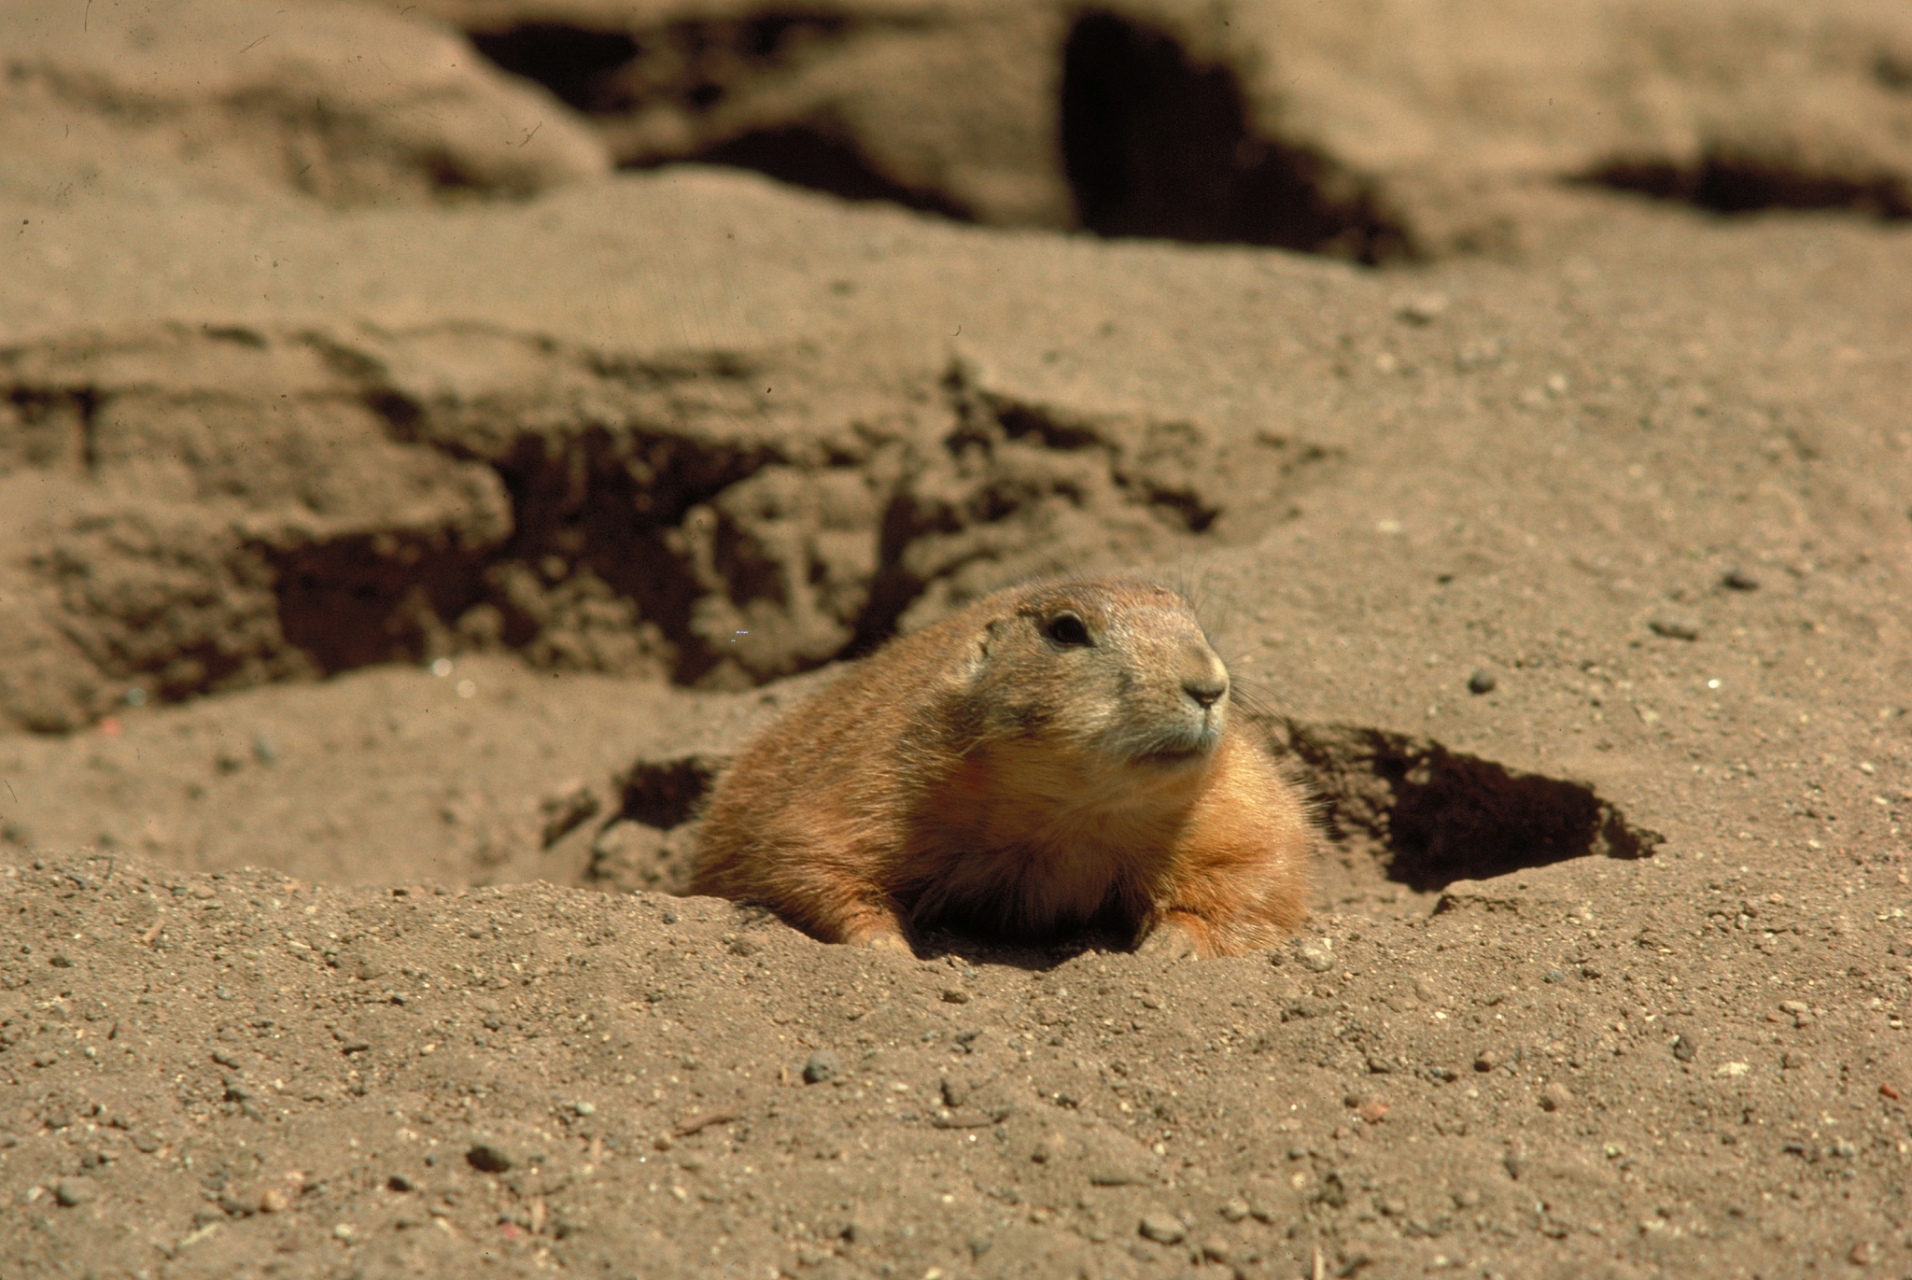 04 沙漠跳鼠:沙地中的法拉利04  速度之冠 96:你知道吗,沙漠